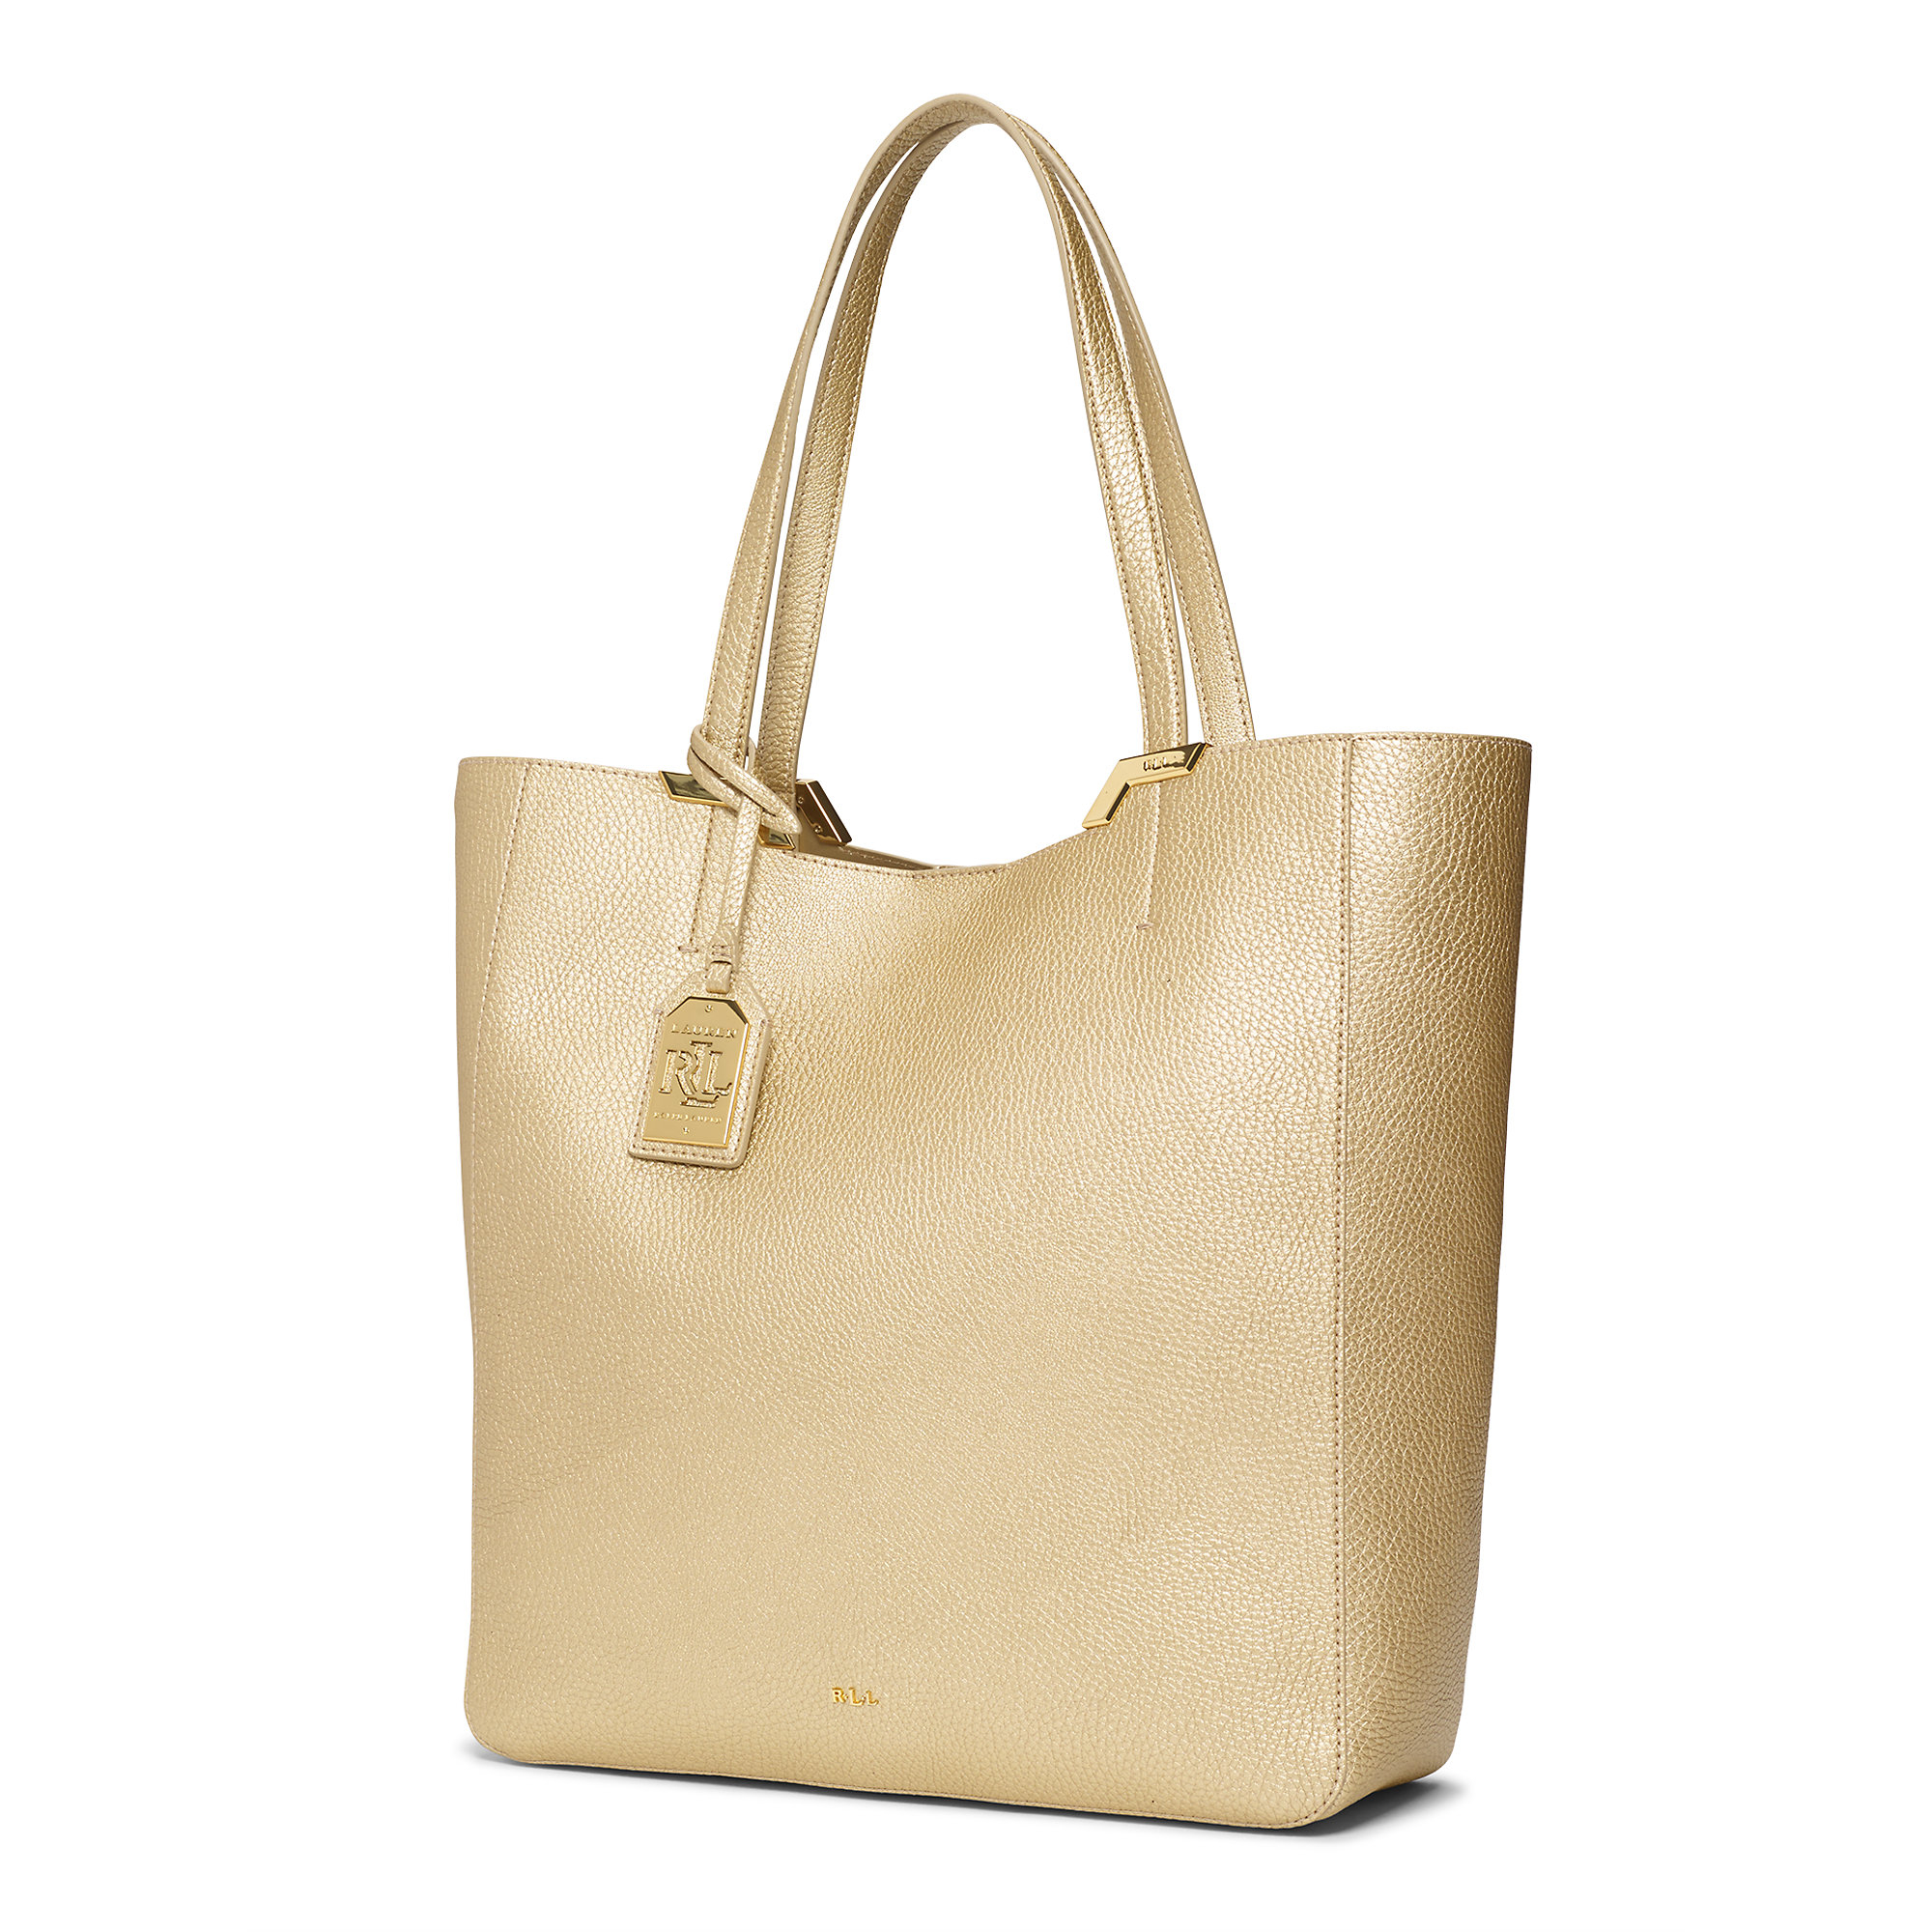 Ralph Lauren Gold Bag Cheap Sale, SAVE 50% - mpgc.net